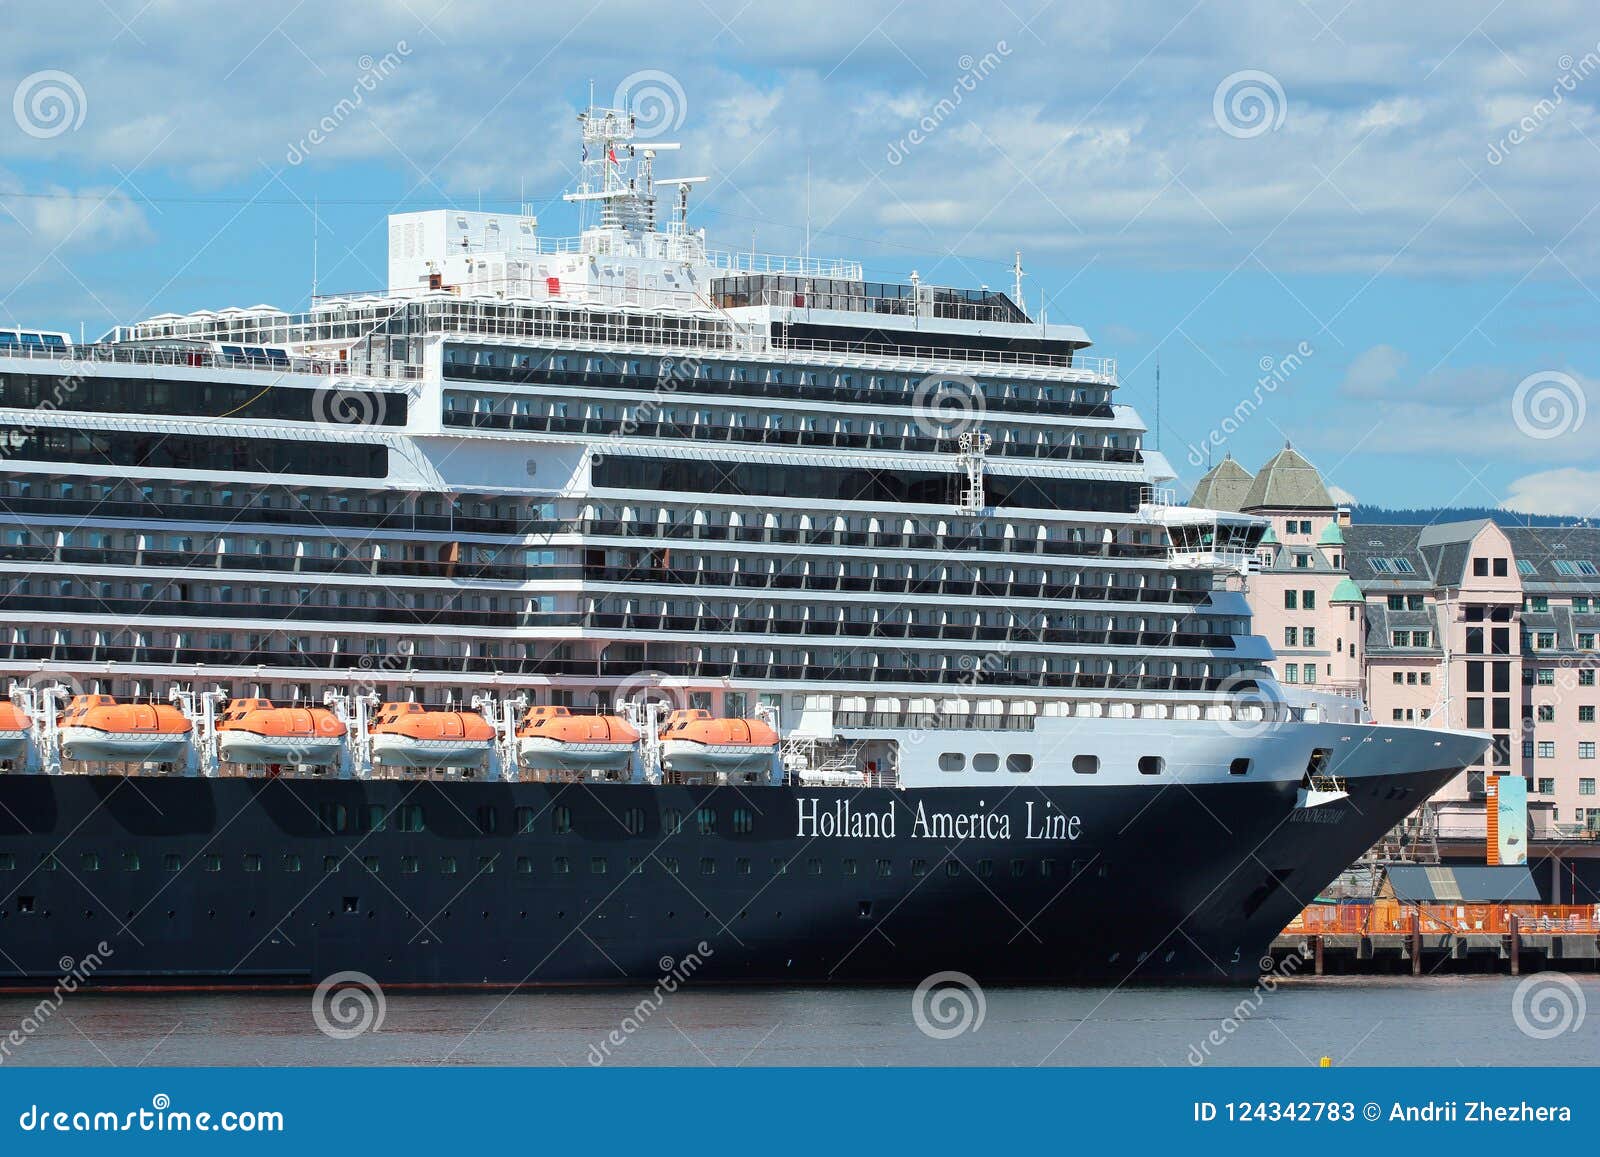 cruise ship oslo